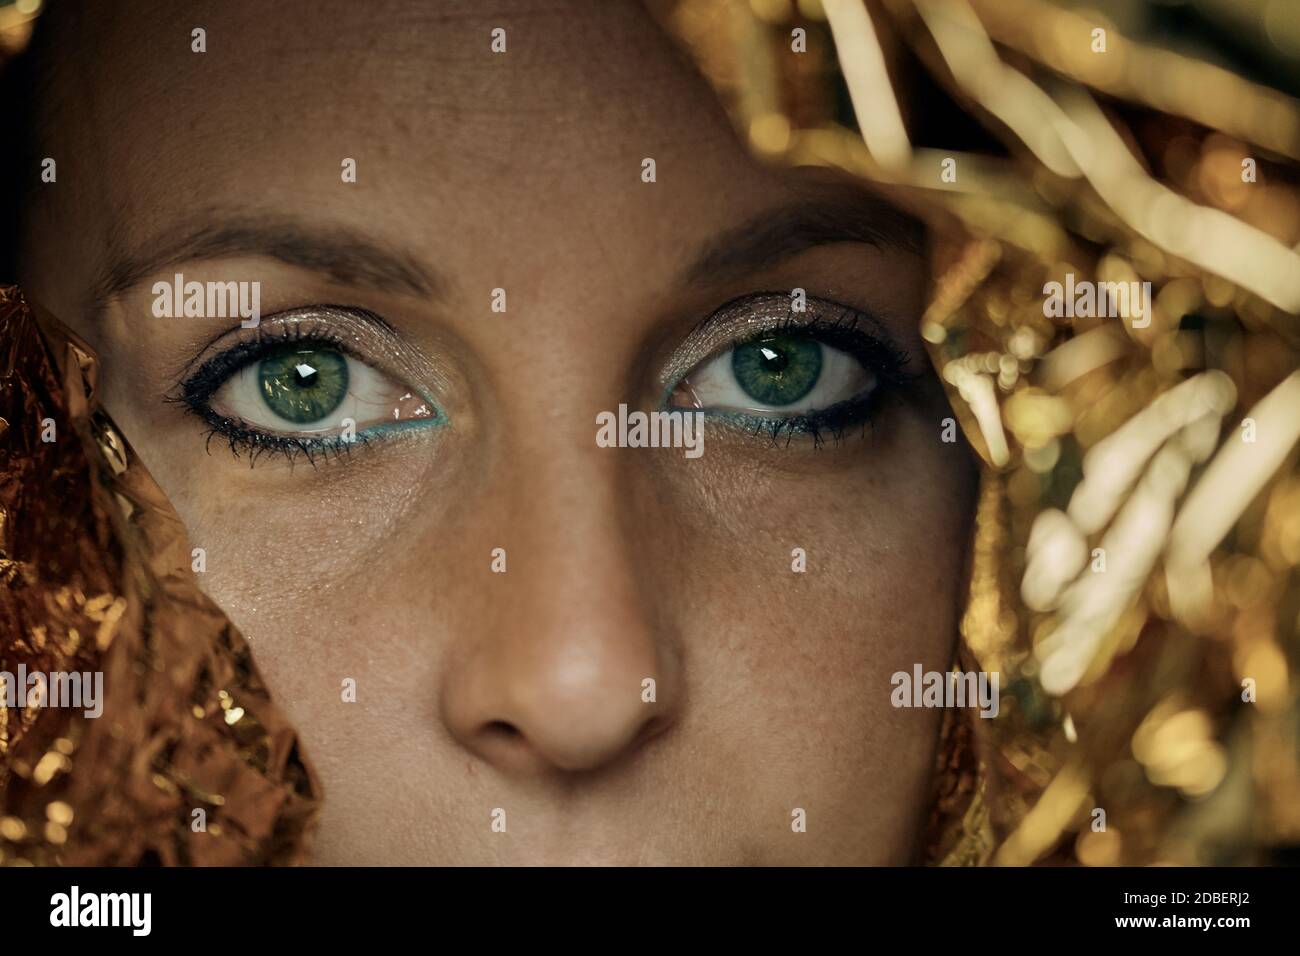 Primer plano de los expresivos ojos verdes de una joven cara de la mujer con el rebaño y el papel de oro. Foto de stock